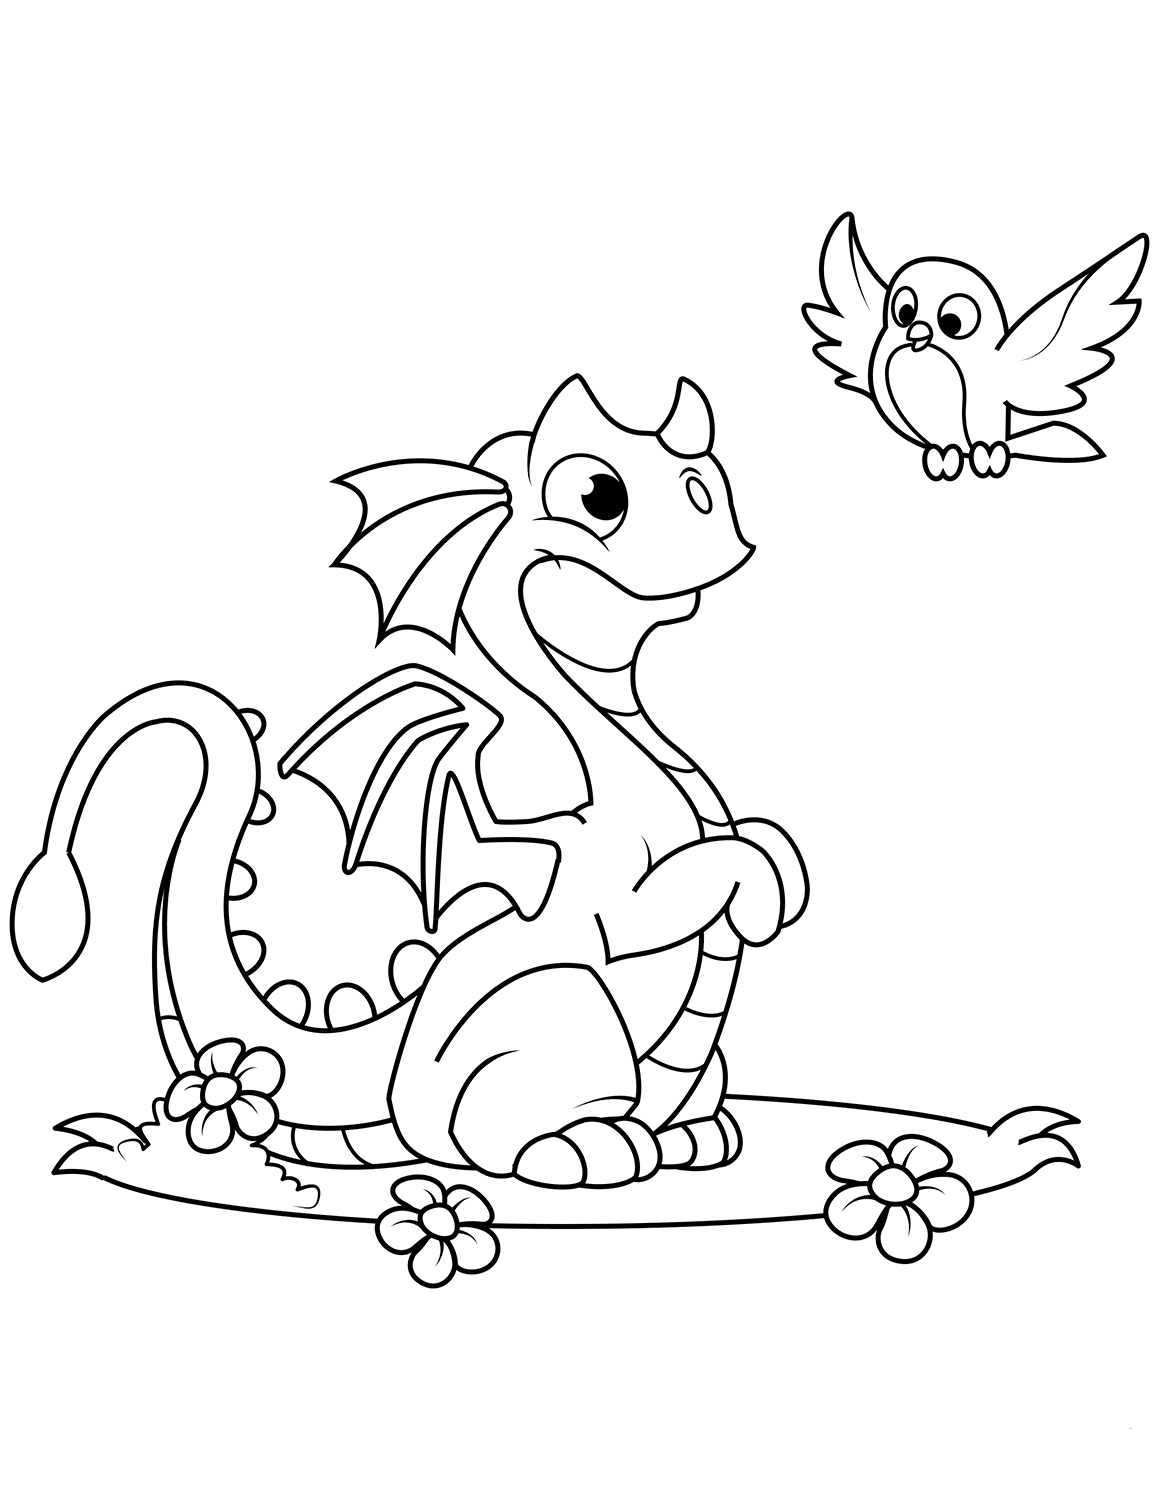 kawaii cute dragon coloring pages